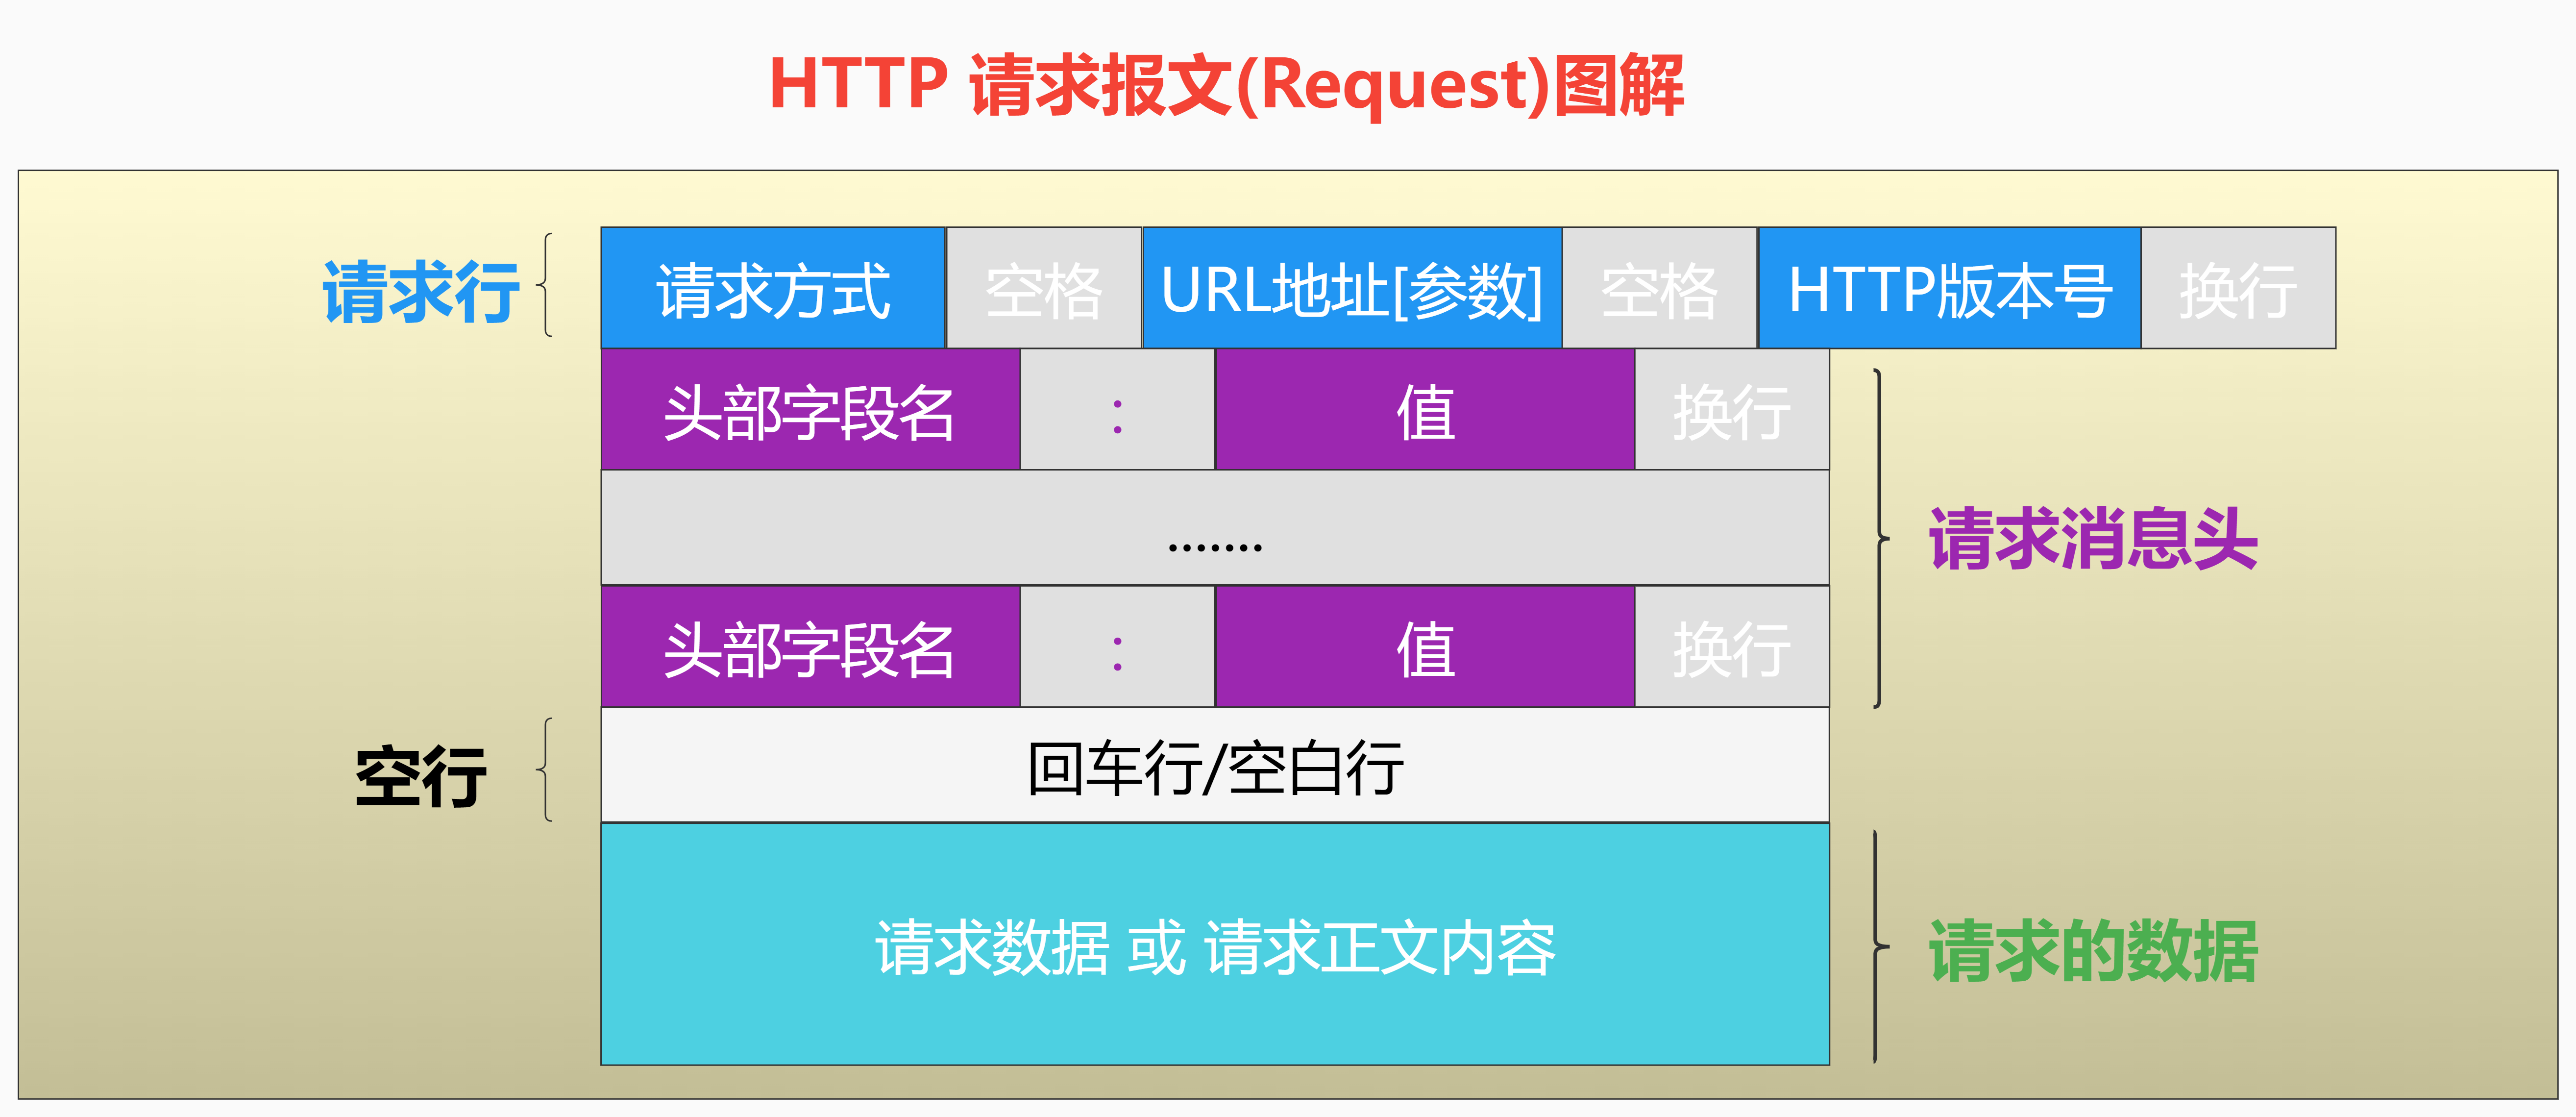 【保姆级教程】 全网最强HTTP+Fiddler抓包实战超级全面图文教程 《HTTP请求报文 REQUEST基本结构》